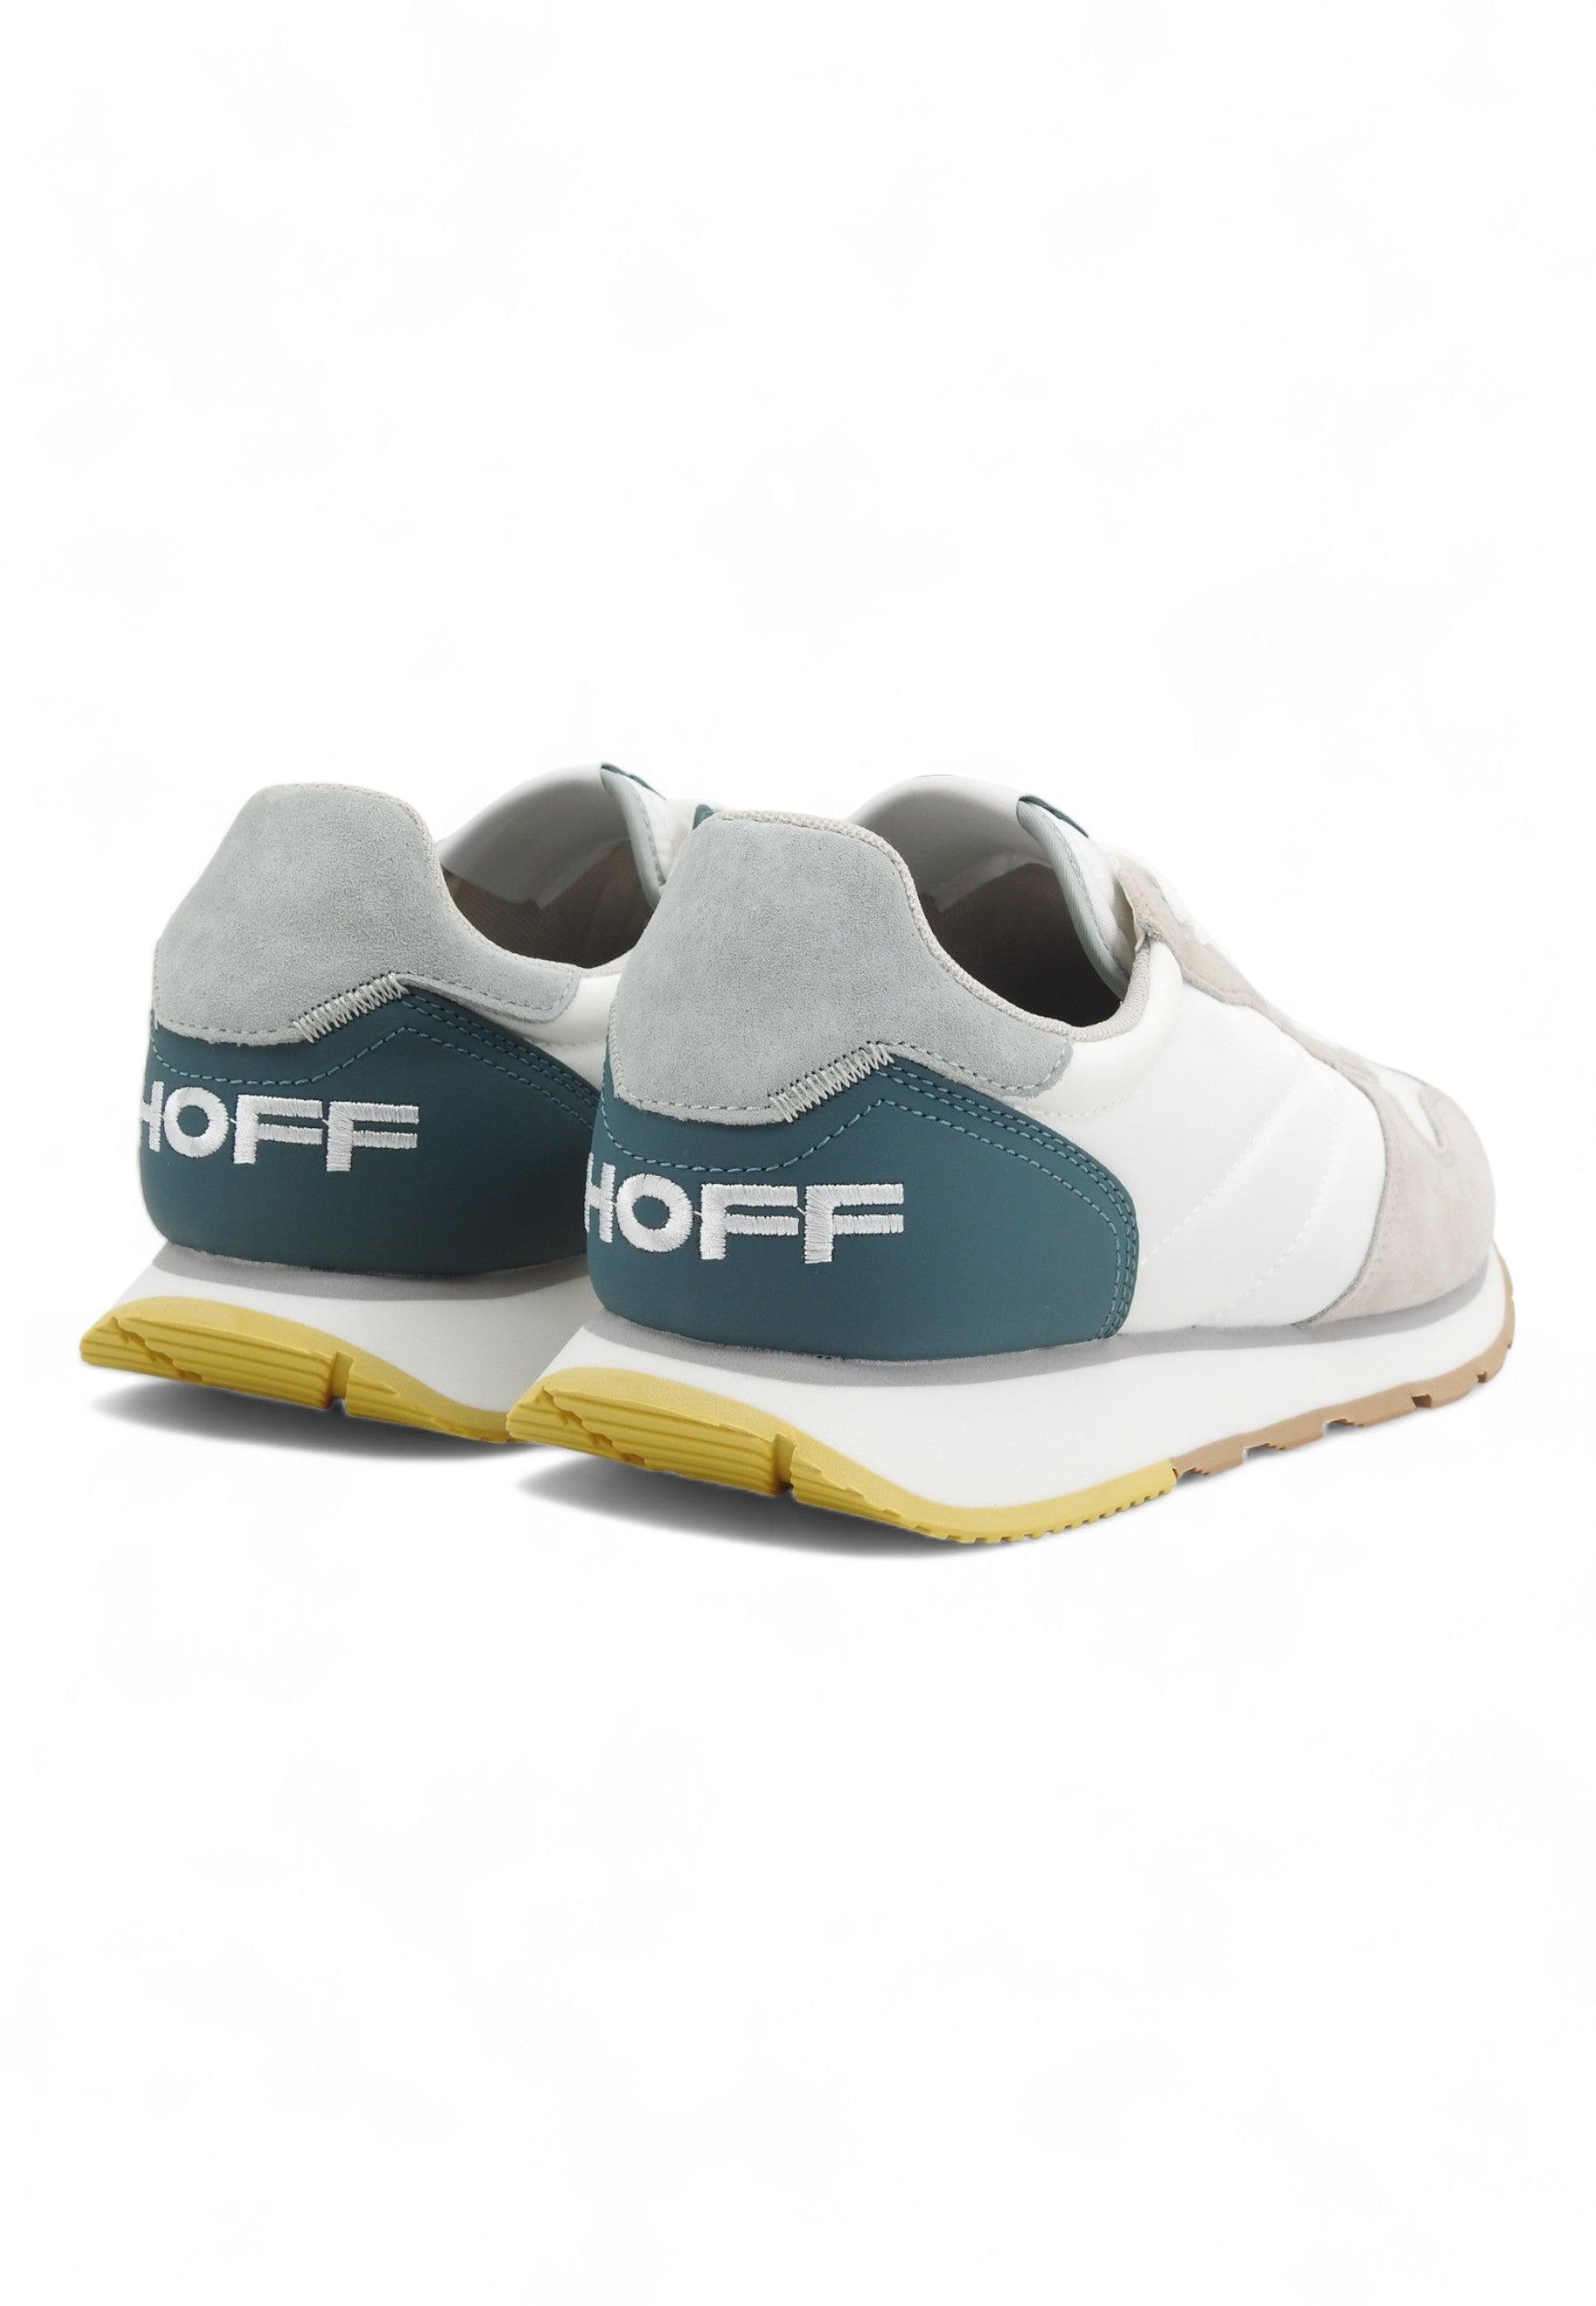 HOFF Arginio Sneaker Uomo White Grey Green 12417608 - Sandrini Calzature e Abbigliamento